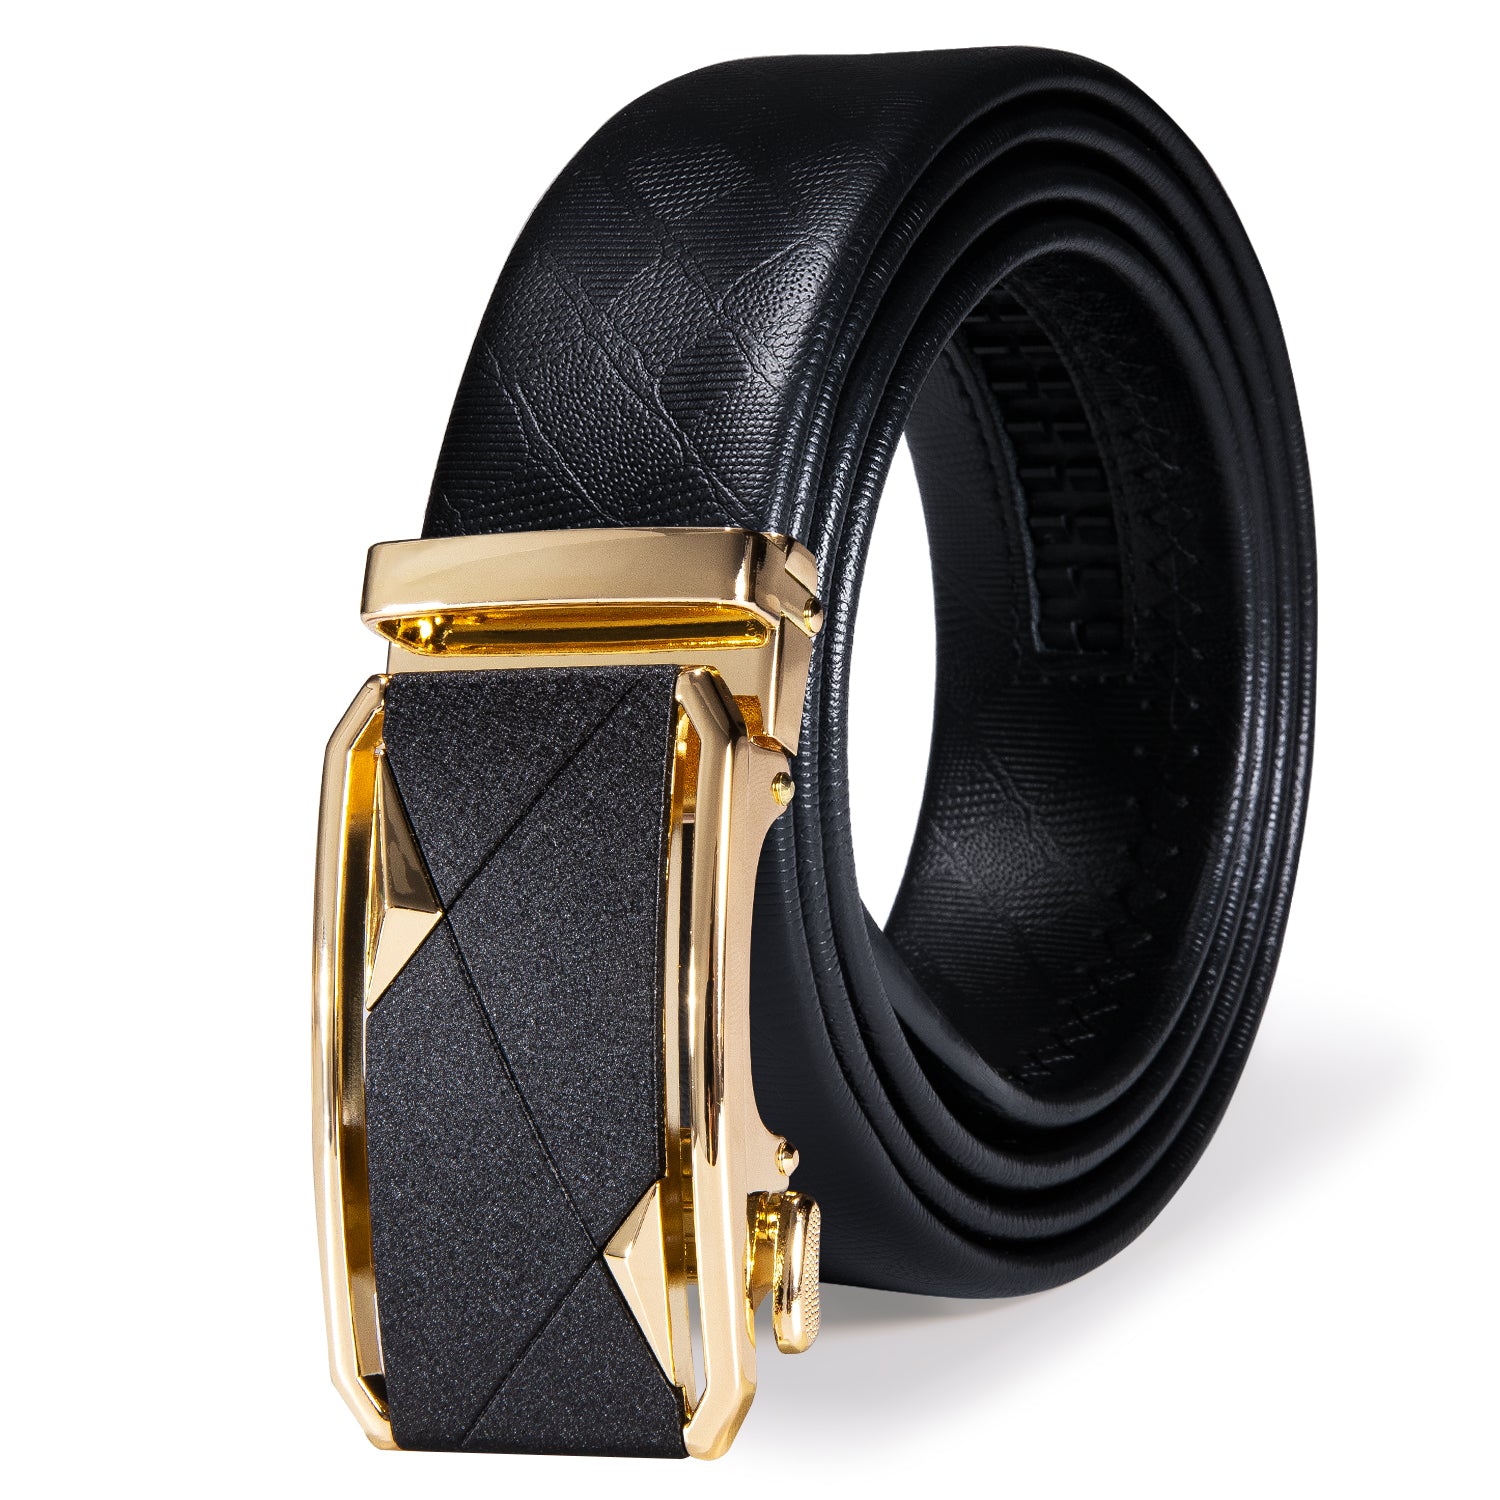 Novelty Golden Black Rectangle Metal Buckle Genuine Leather Belt 43 in